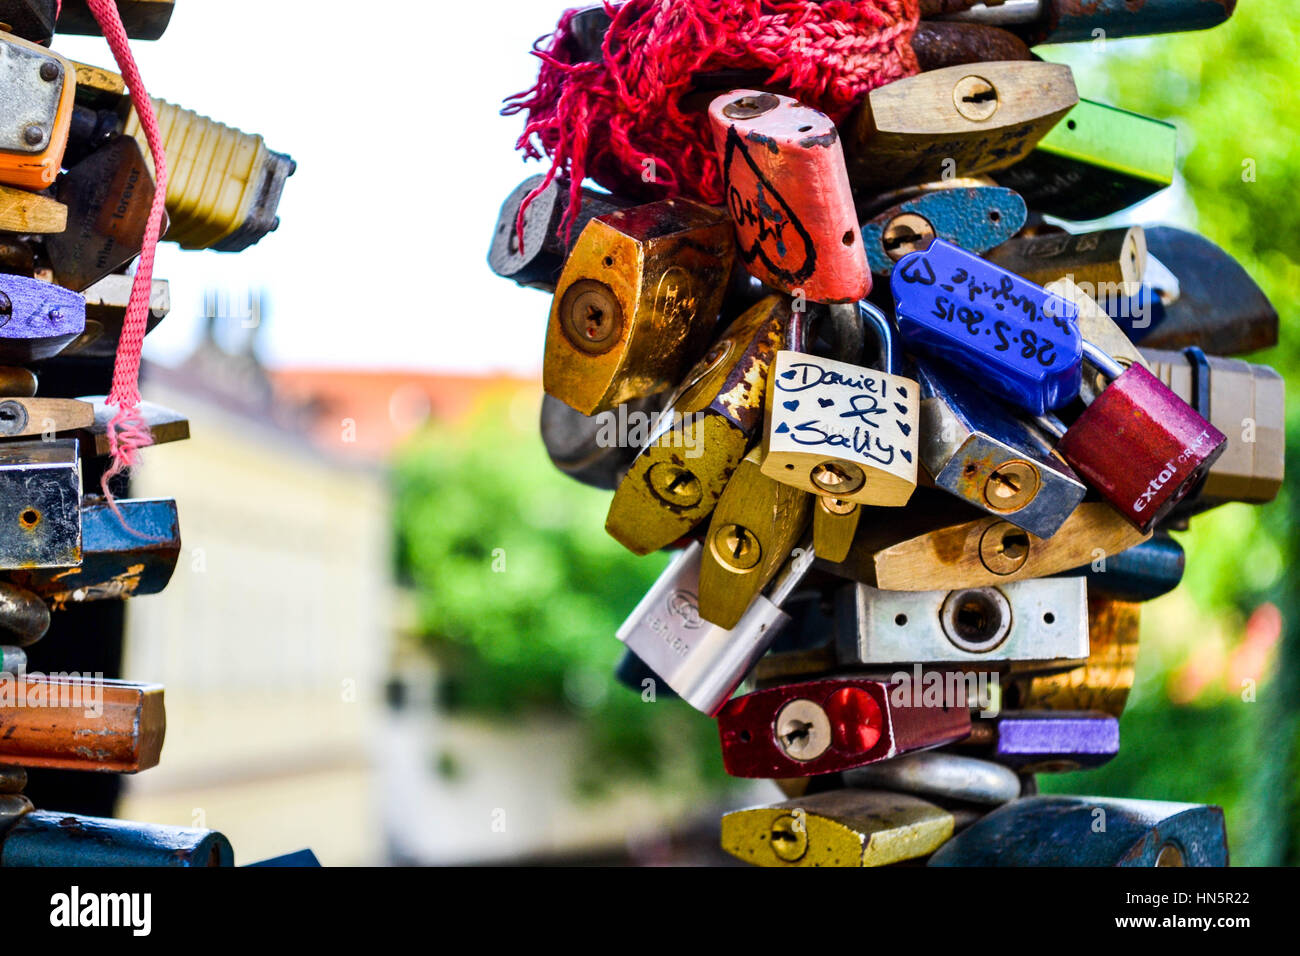 Love locks in Prague Stock Photo